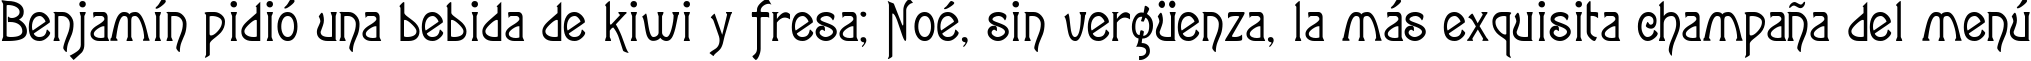 Пример написания шрифтом Agatha-Modern текста на испанском